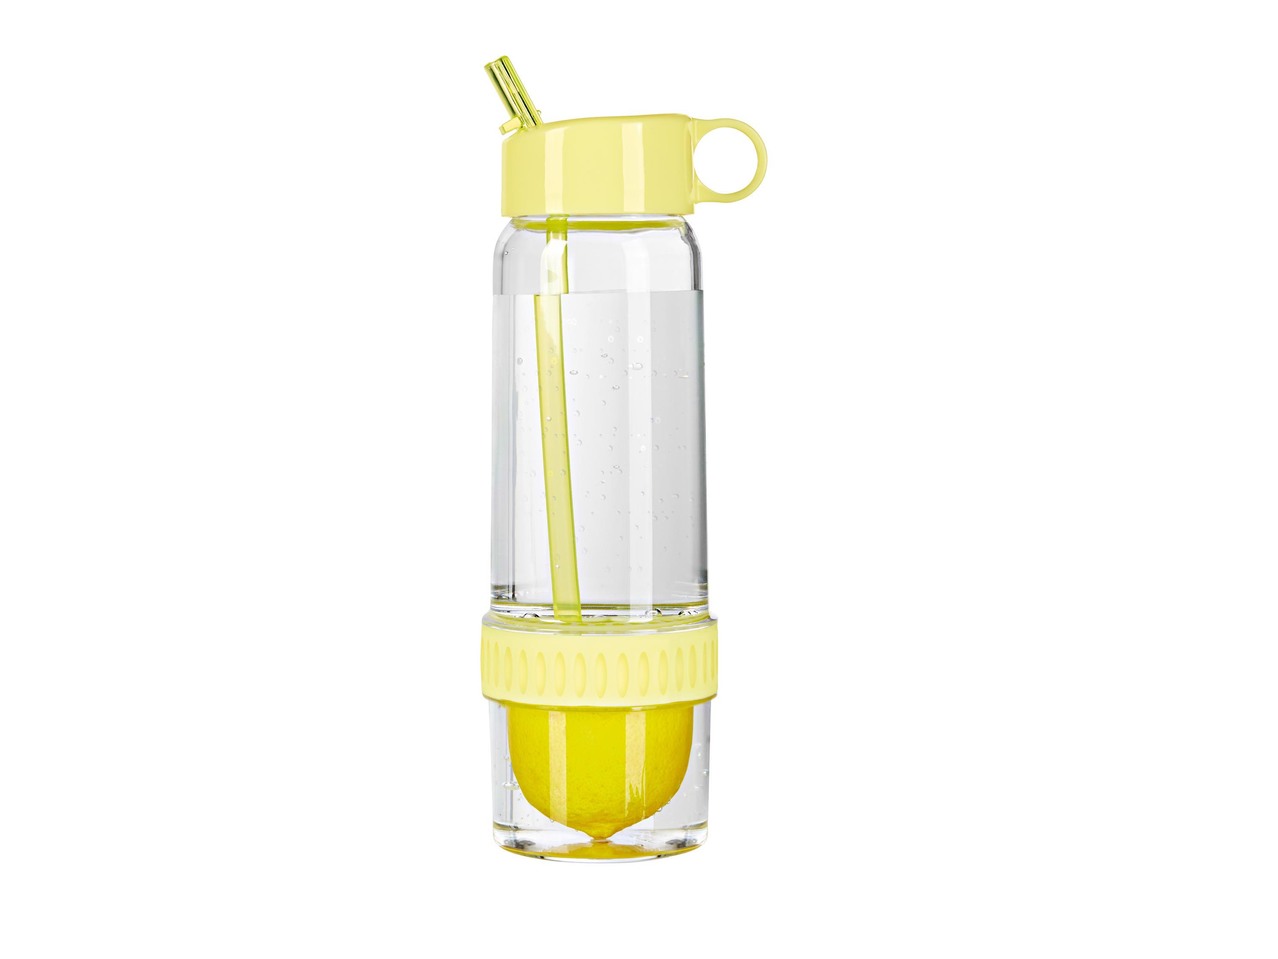 Infuser Bottle or Citrus Juicer Bottle